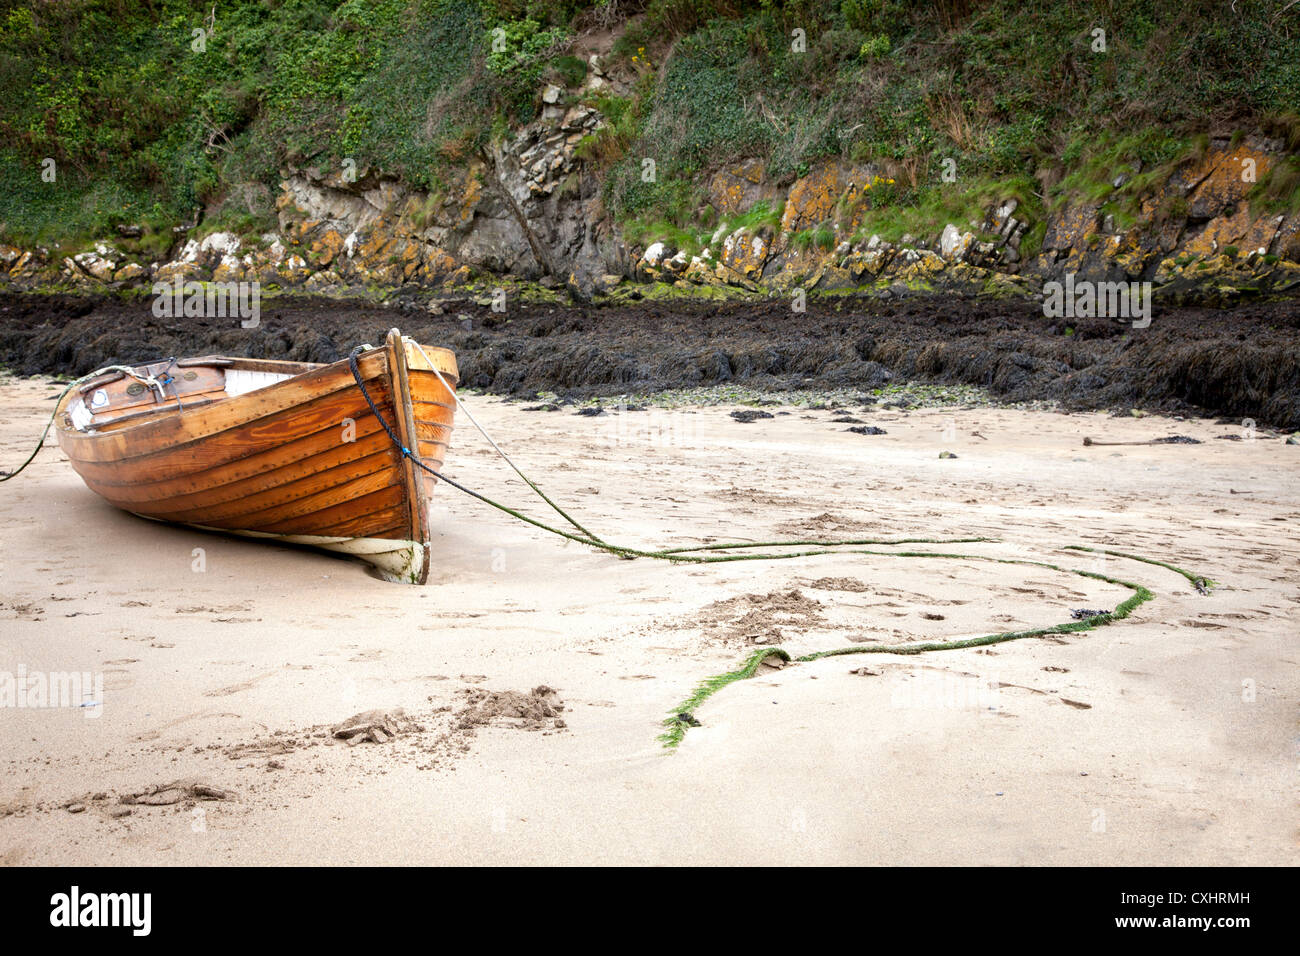 Solva Hafen Pembrokeshire Süd-Wales, UK. Kleines Ruderboot saß in den Sand. Stockfoto